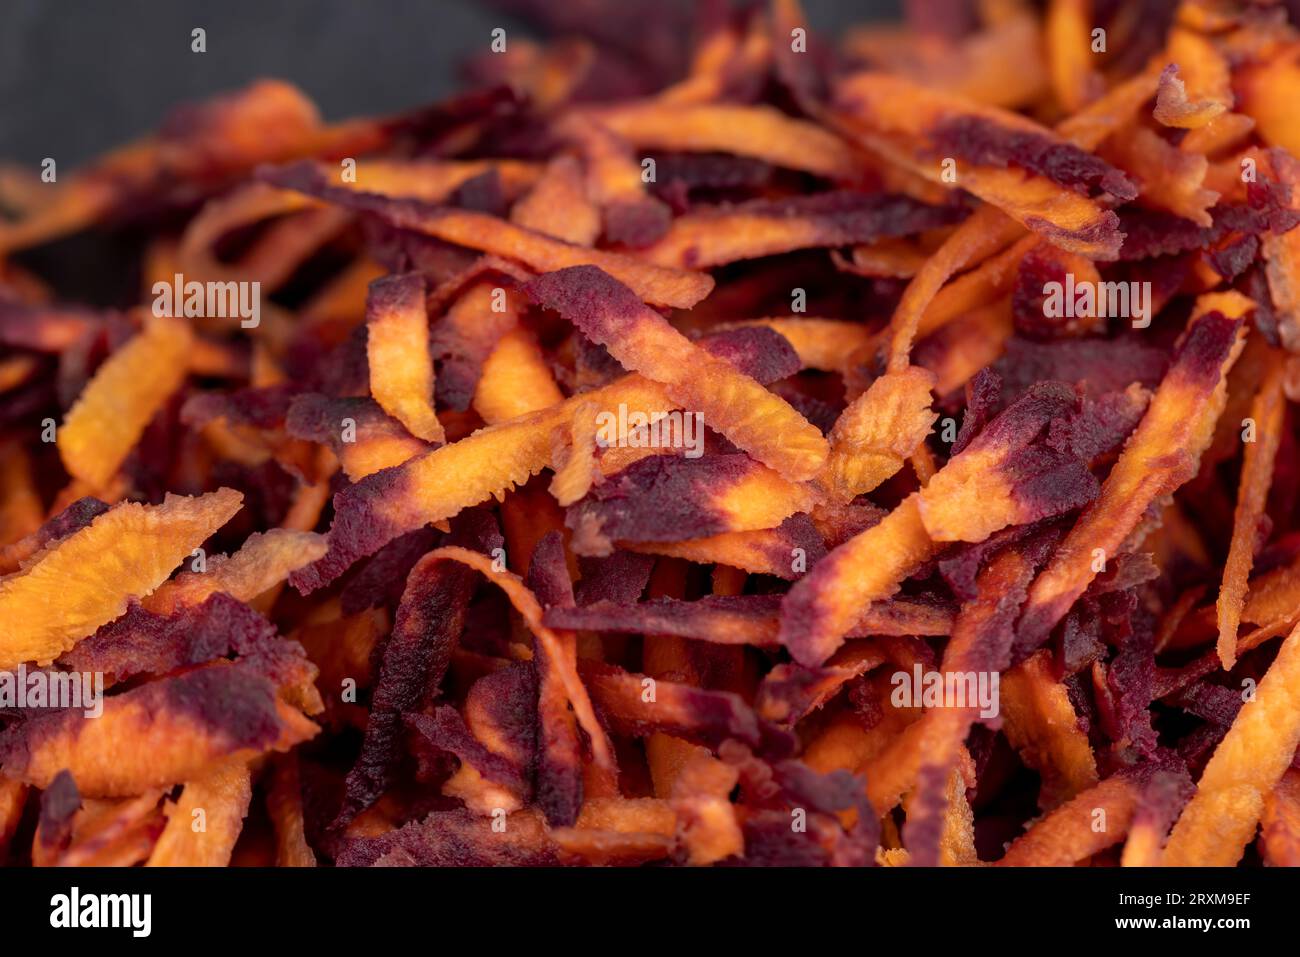 Fein geriebene rot-orangefarbene Karotten in der Küche, mehrere geschälte und gewaschene Karotten, die in Stücke gerieben wurden, auf einer Reibe Stockfoto